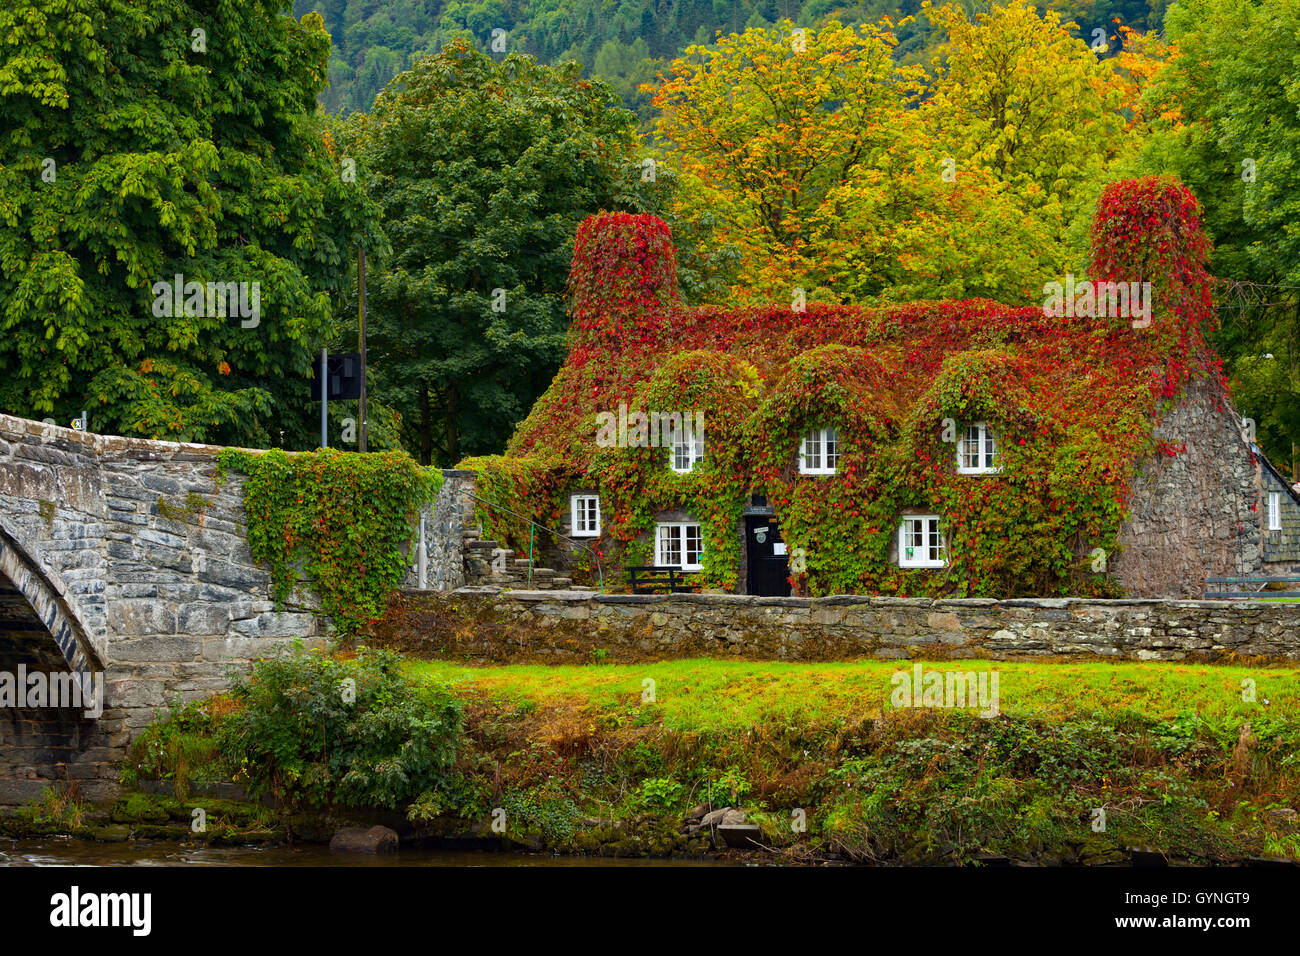 L'automne arrive à Tu Hwnt J'r Bont de thé sur les rives de la rivière Conwy. L'automne commence le rougissement de la puce qui transforme un rouge vibrant pendant ce temps de l'année. Banque D'Images